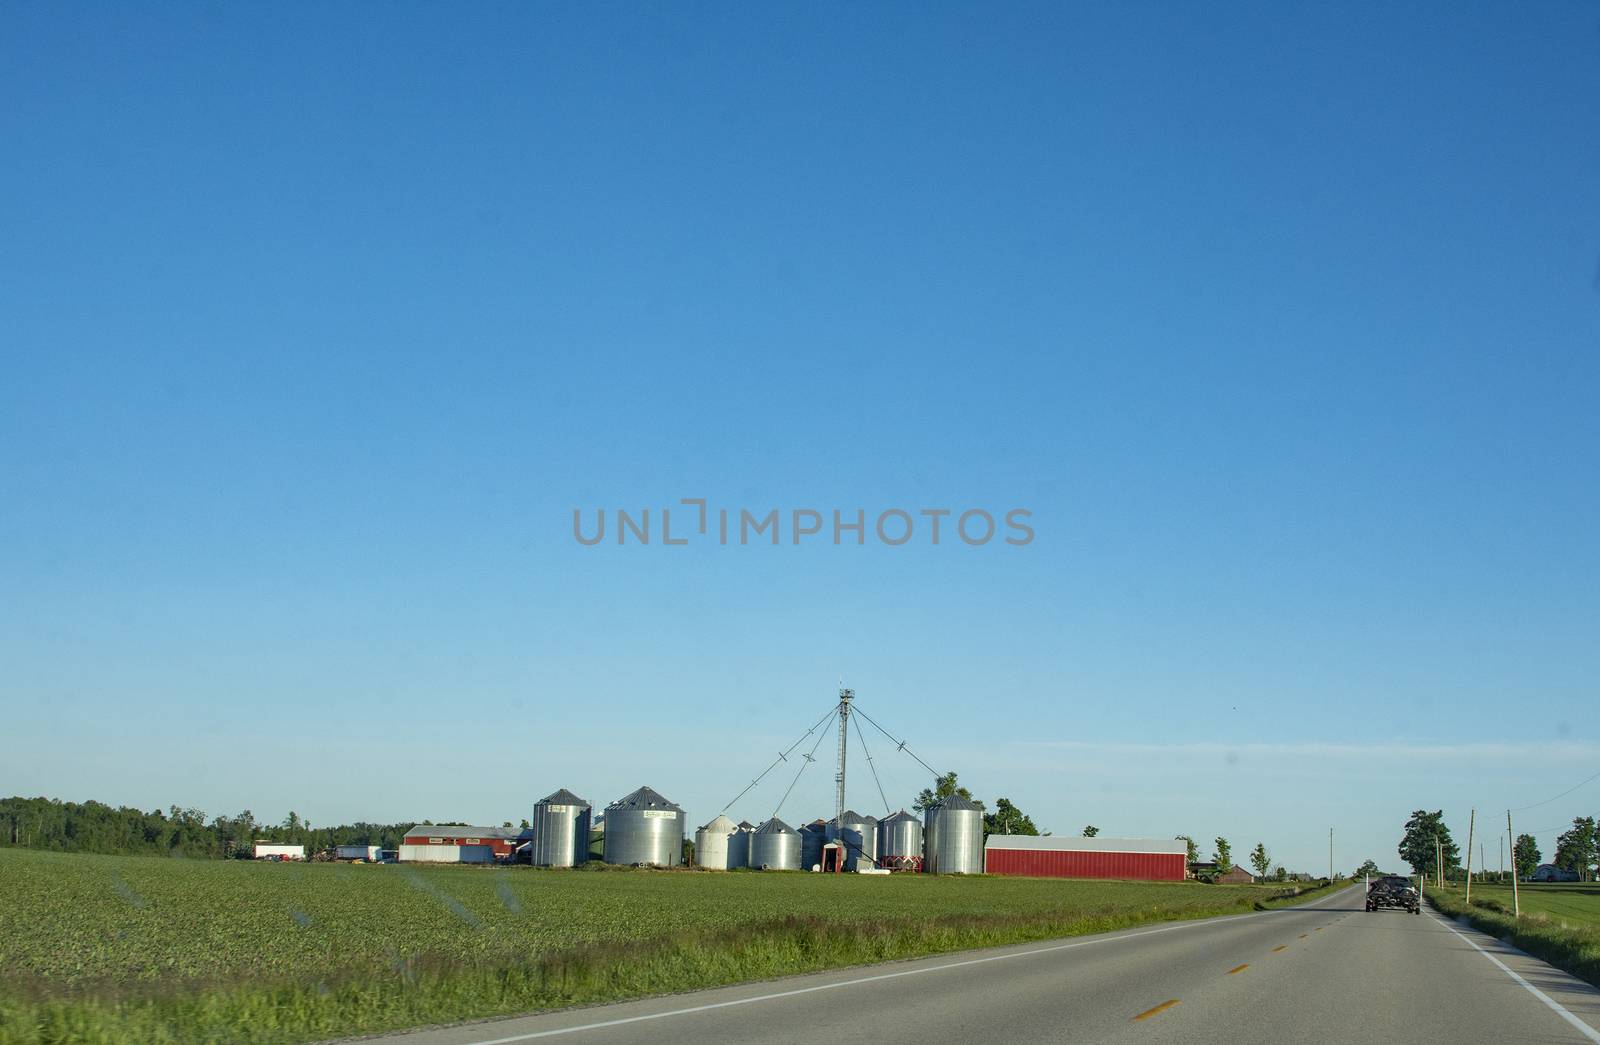 Farm in Ontario Canada by ben44